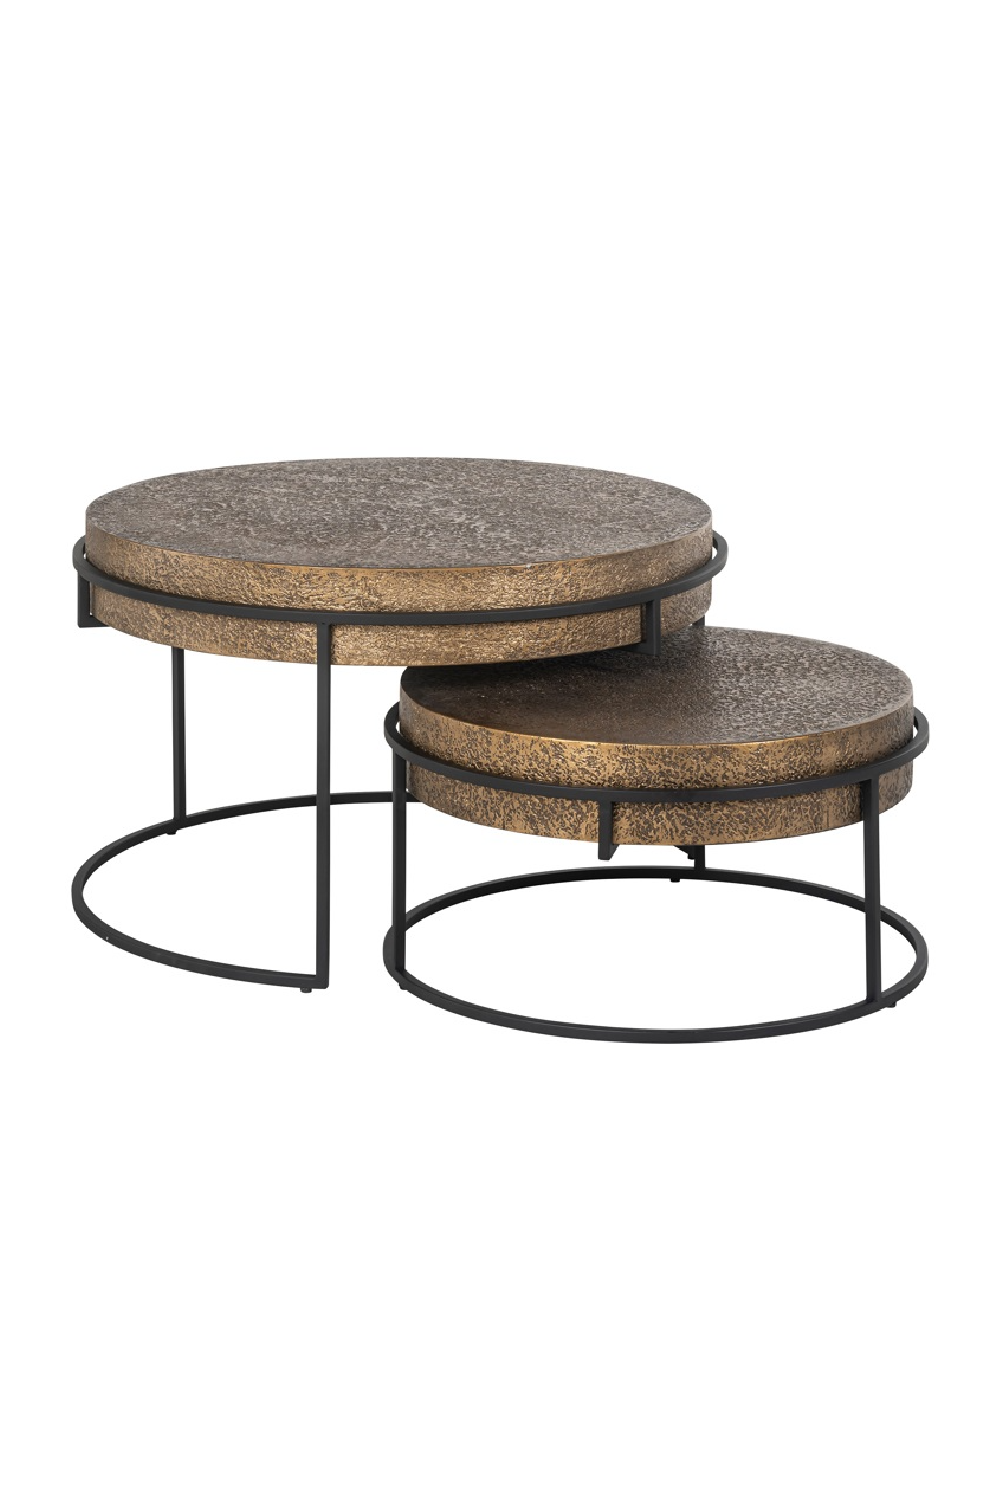 Round Metal Nesting Coffee Tables (2) OROA Derby OROA - OROA